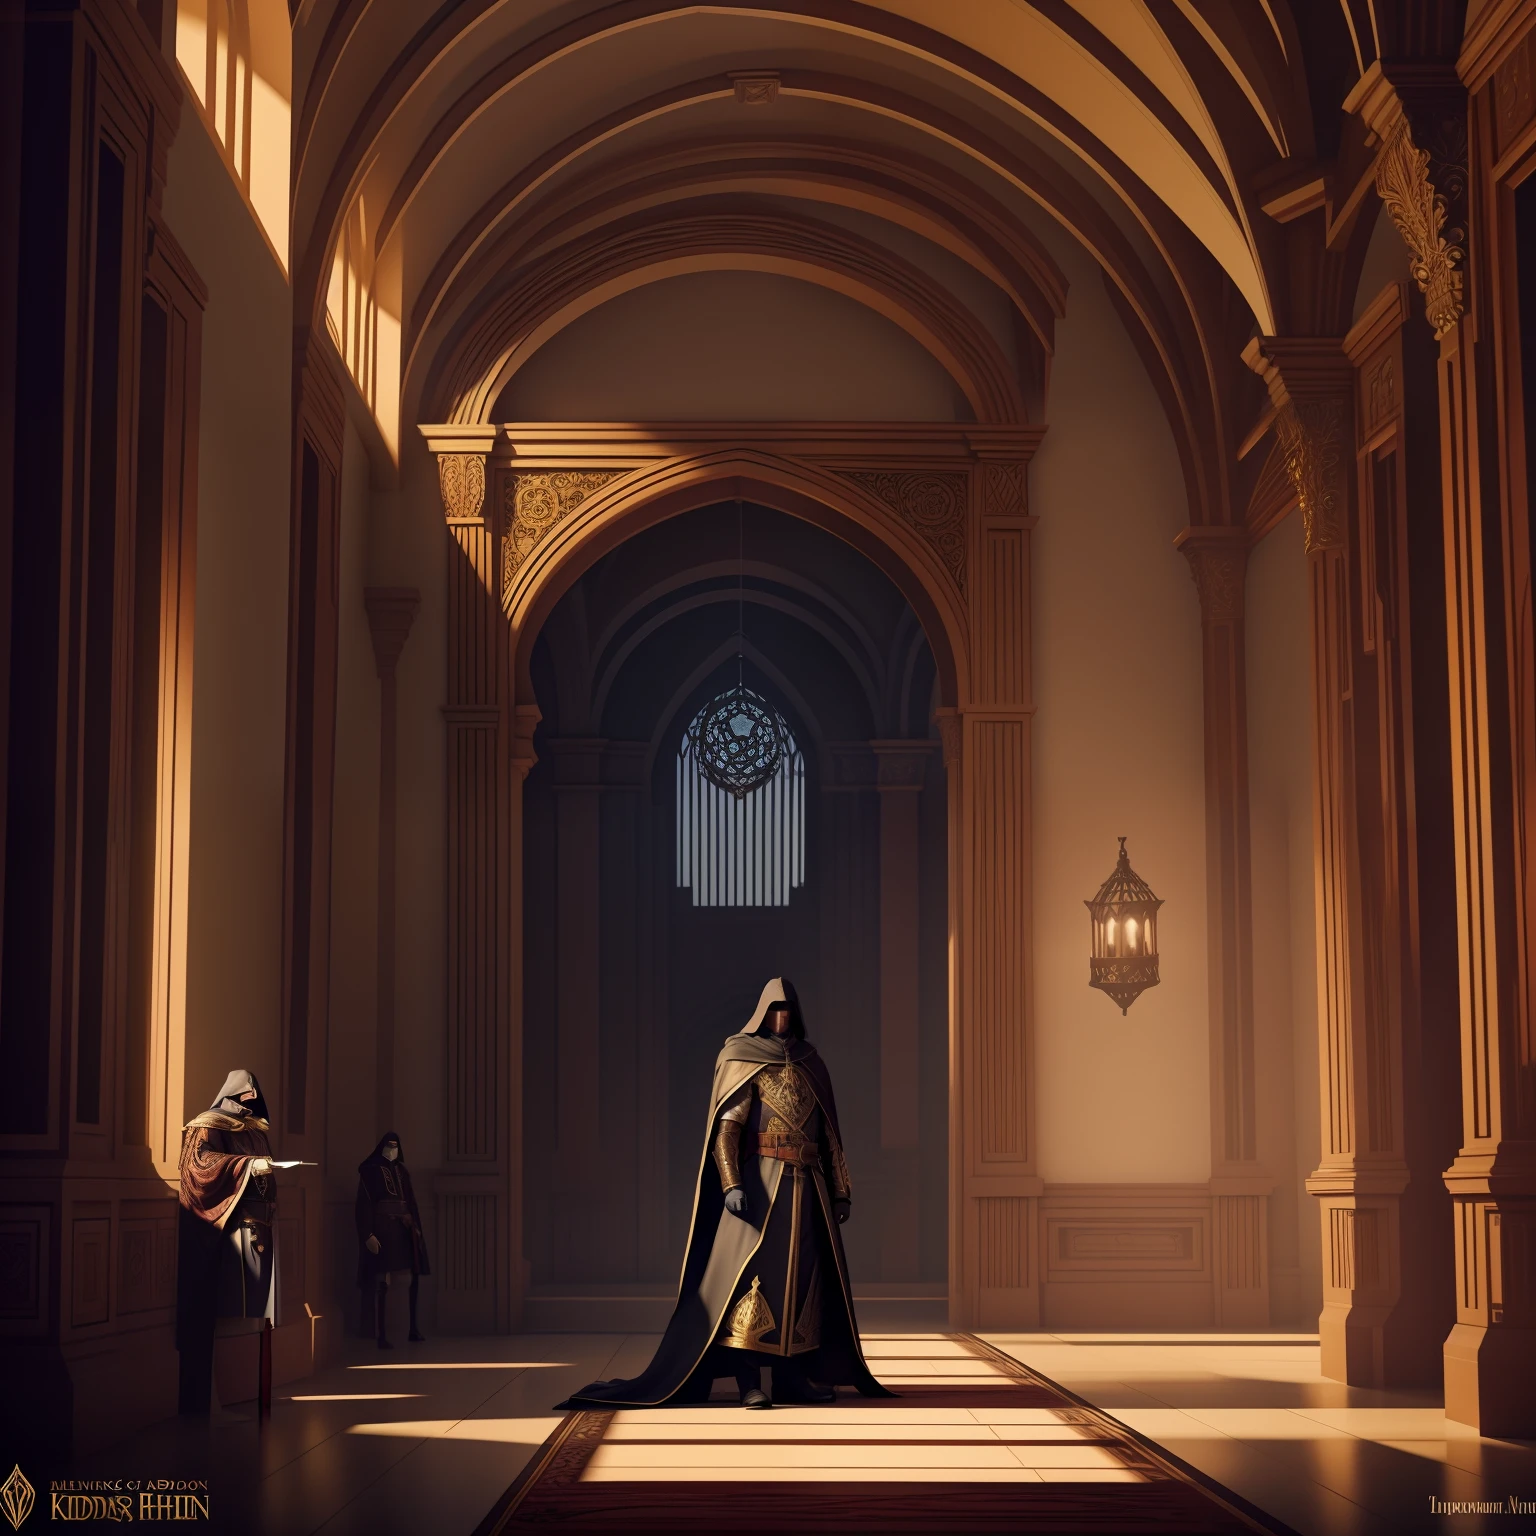 Há o conselheiro do rei encapuzado ao lado dele nas sombras em um belo salão, Arte conceitual Estilo dramático